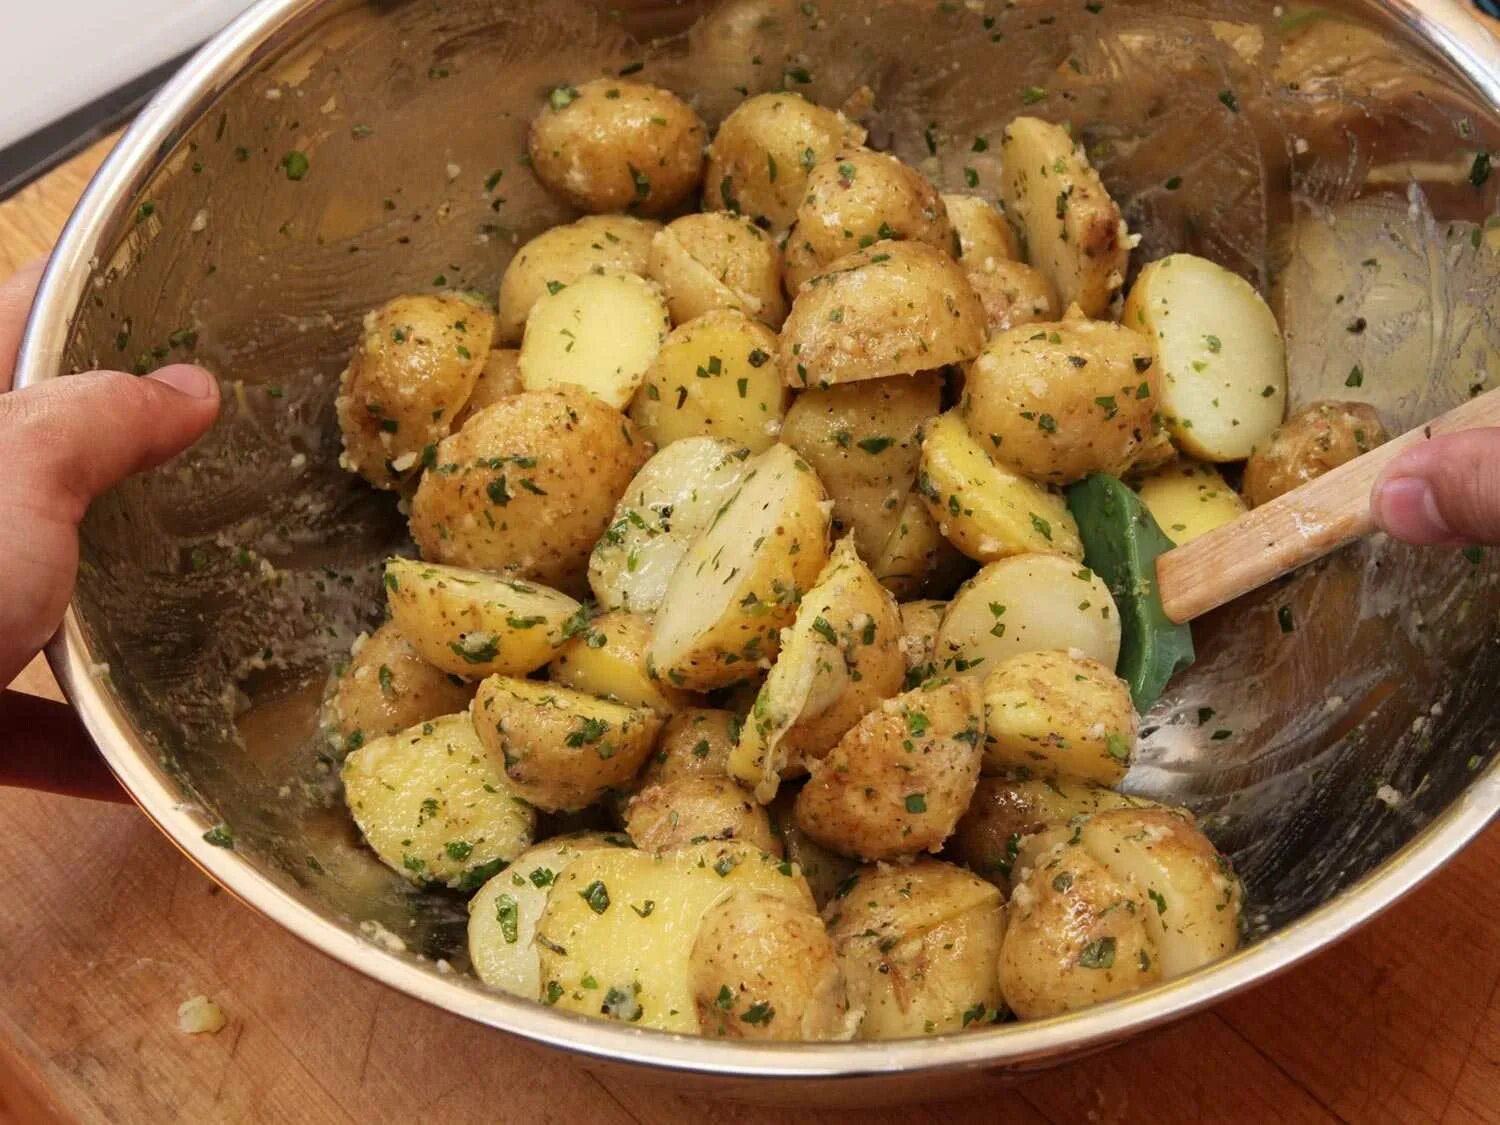 Печь картошку сколько времени. Картофель для варки. Картофель в мундире. Варка картофеля в мундире. Блюда из картофеля.